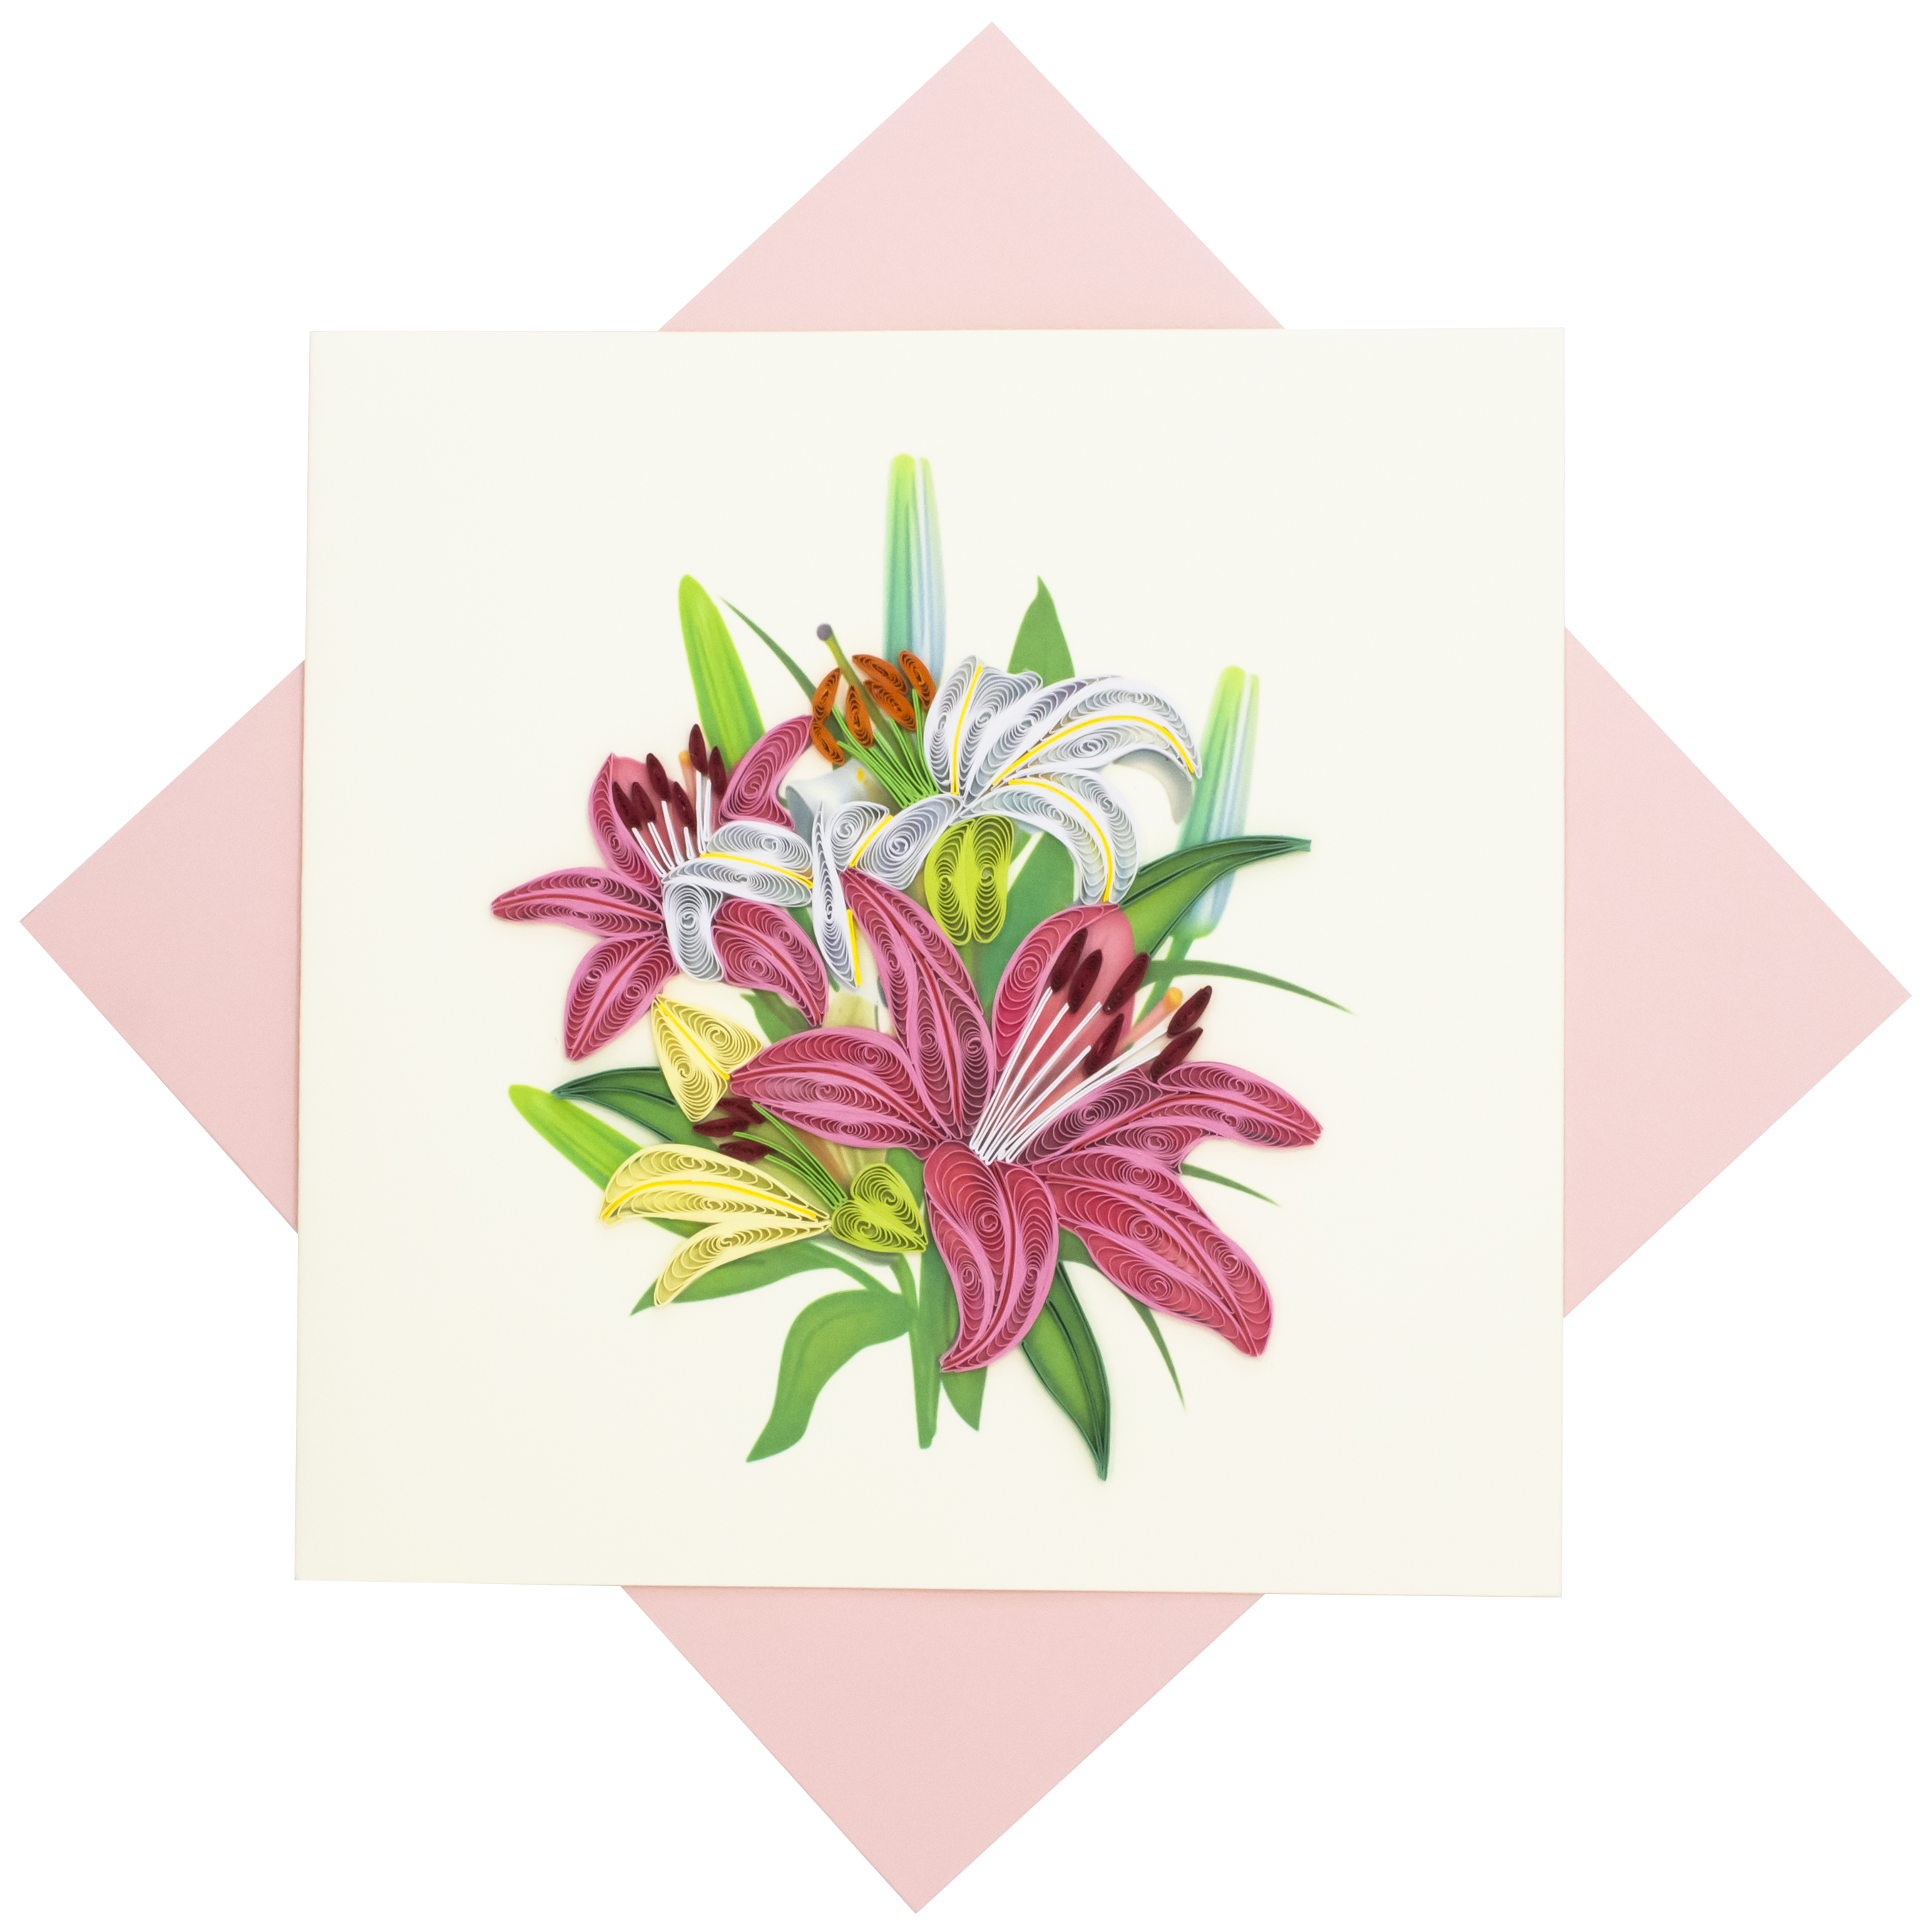 Thiệp Handmade - Thiệp Hoa ly hồng nghệ thuật giấy xoắn (Quilling Card) - Tặng Kèm Khung Giấy Để Bàn - Thiệp chúc mừng sinh nhật, kỷ niệm, tình yêu, cảm ơn…